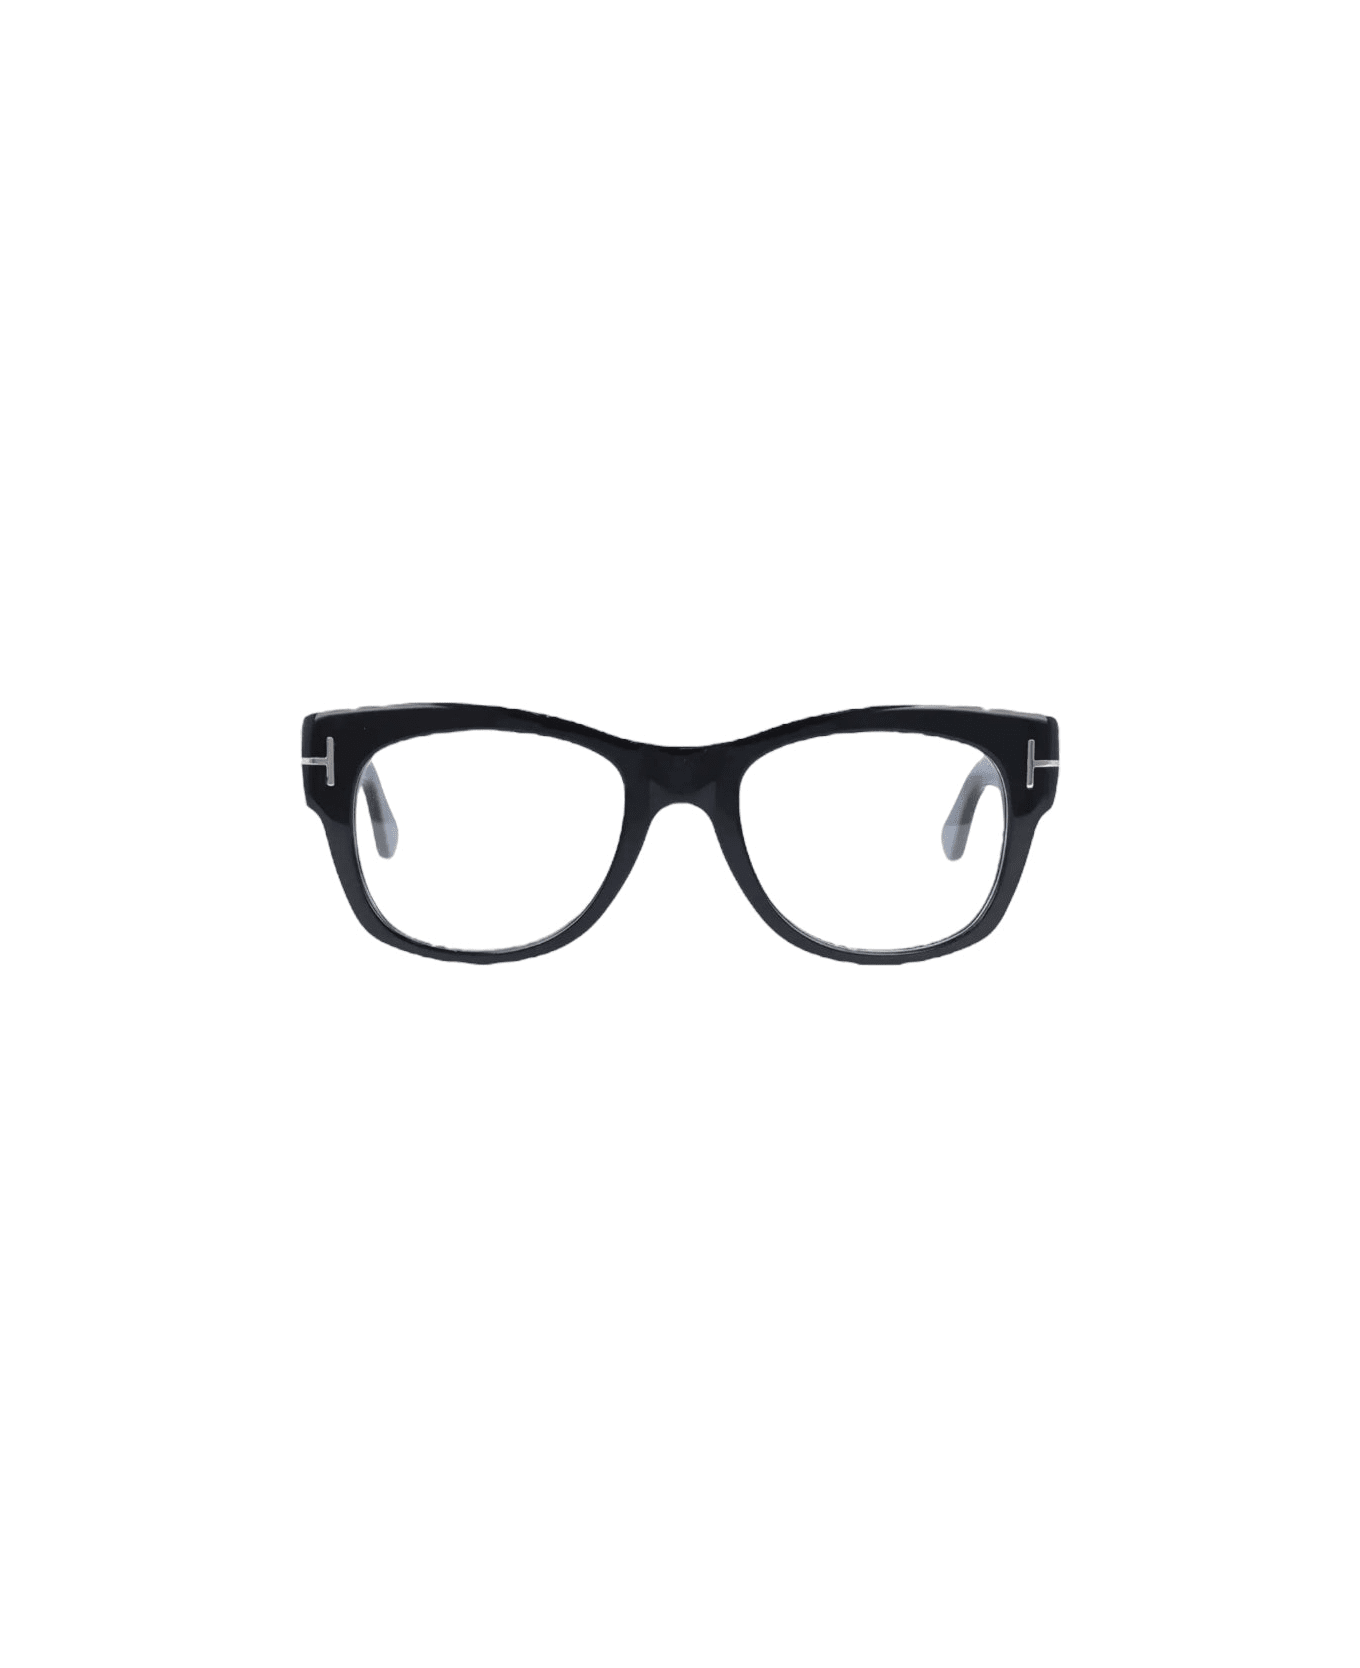 Tom Ford Eyewear Tf 5040 - Black Glasses アイウェア